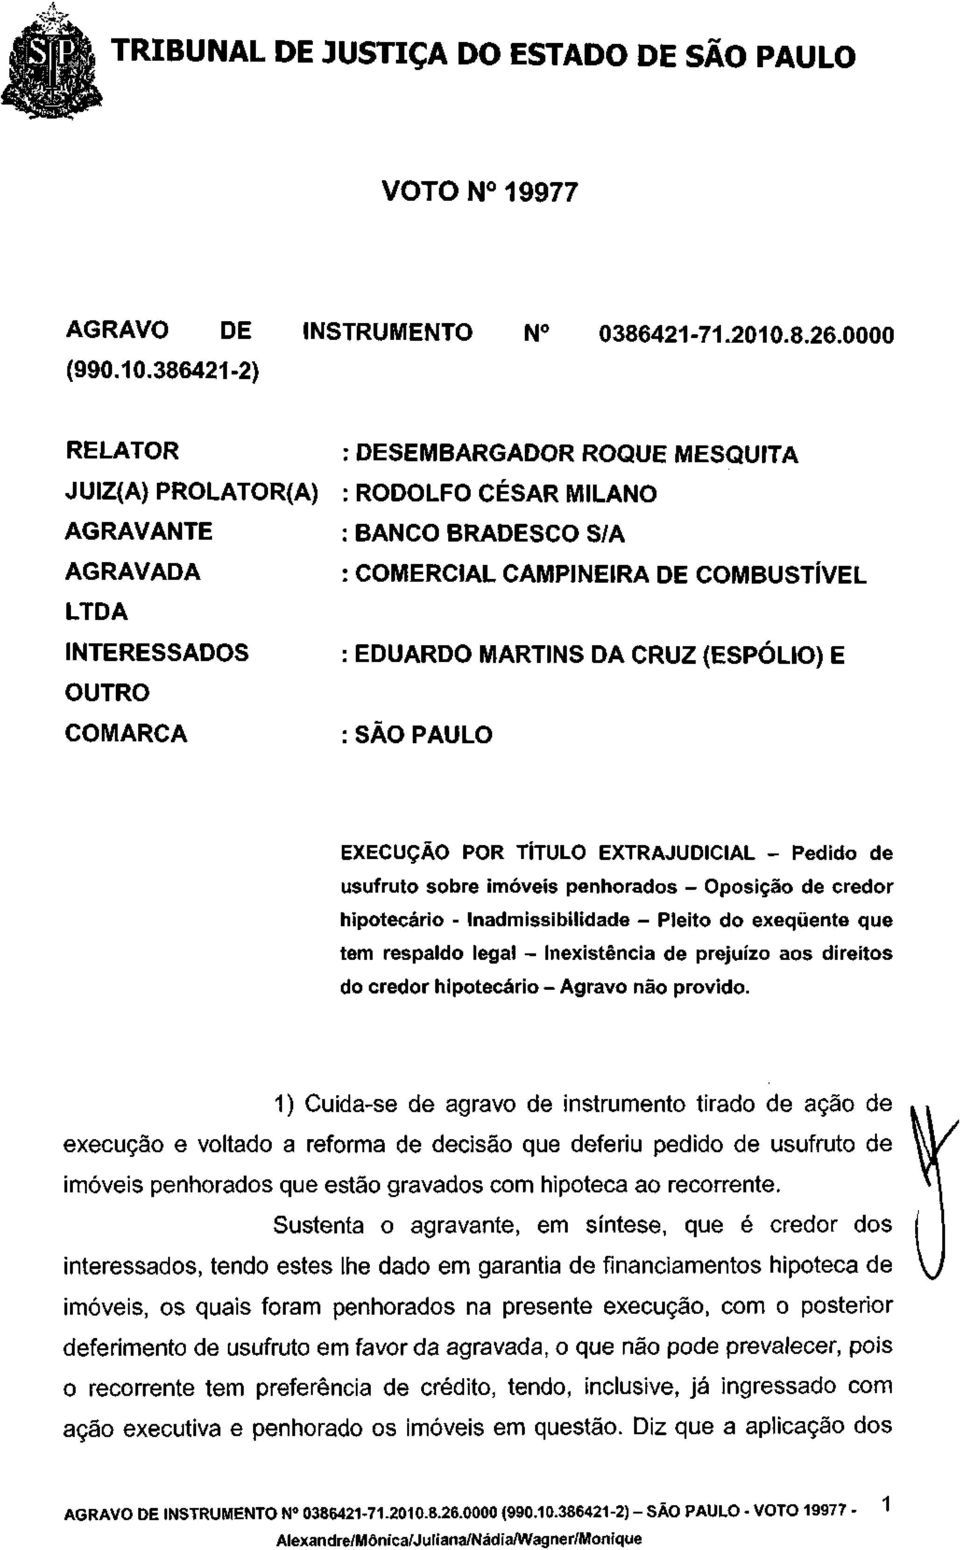 386421-2) RELATOR JUIZ(A) PROLATOR(A) AGRAVANTE AGRAVADA LTDA INTERESSADOS OUTRO COMARCA DESEMBARGADOR ROQUE MESQUITA RODOLFO CÉSAR MILANO BANCO BRADESCO S/A COMERCIAL CAMPINEIRA DE COMBUSTÍVEL